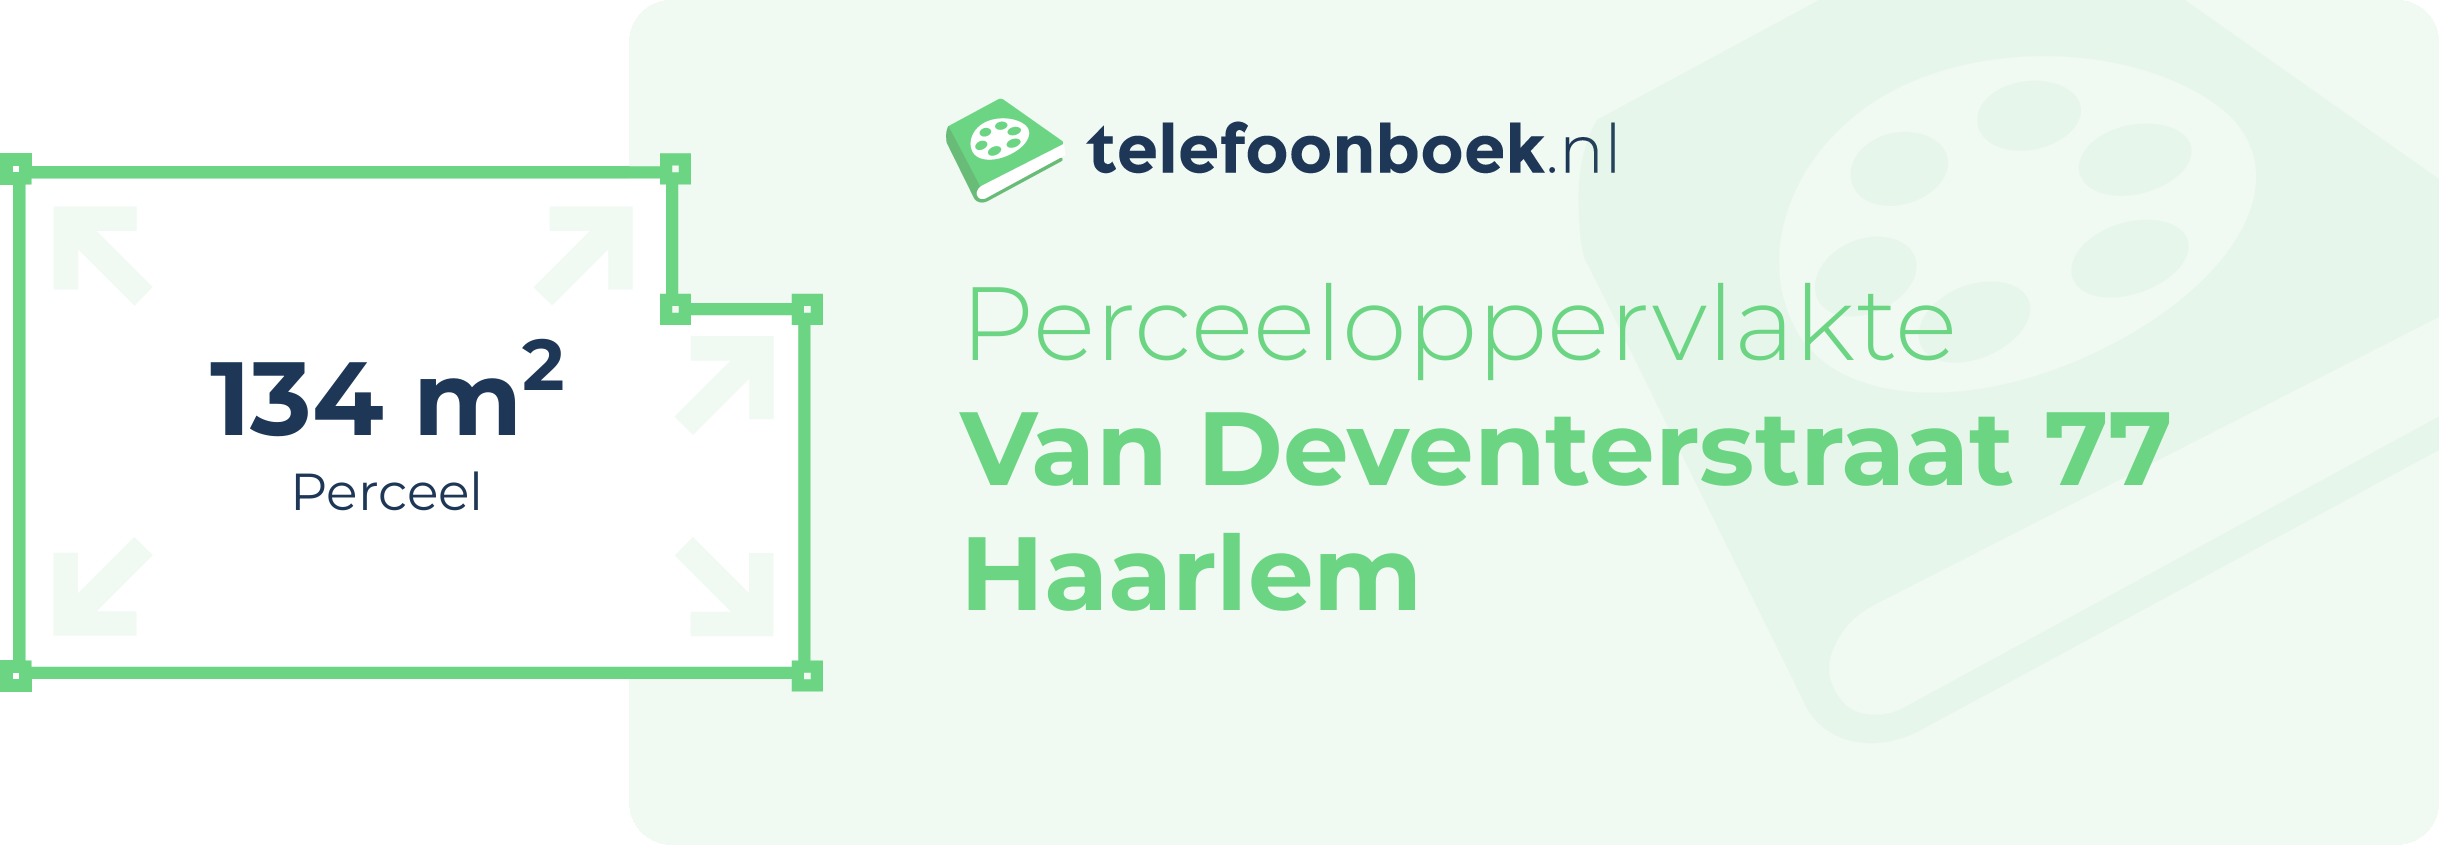 Perceeloppervlakte Van Deventerstraat 77 Haarlem